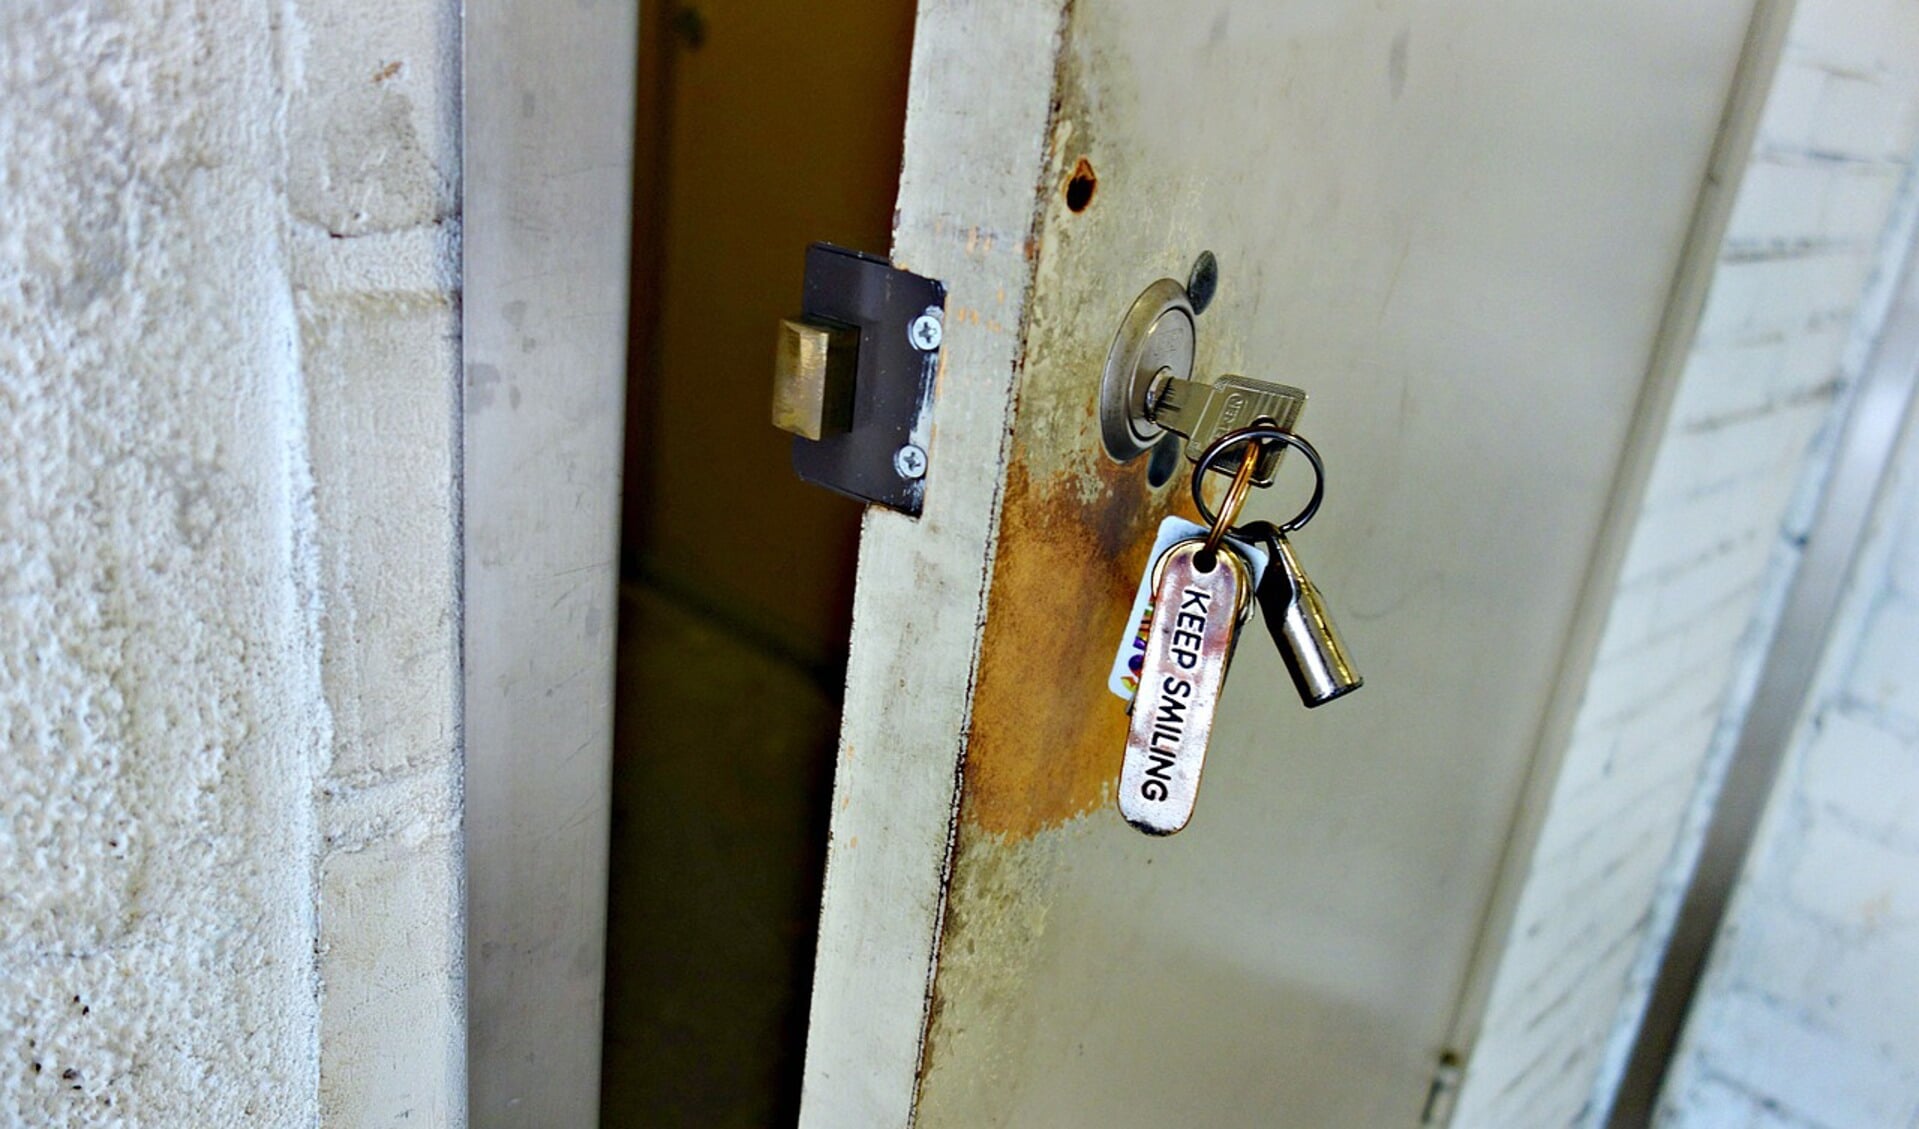 Hoe komt u binnen als u uw sleutel bent vergeten of als de sleutel afbreekt in het slot?